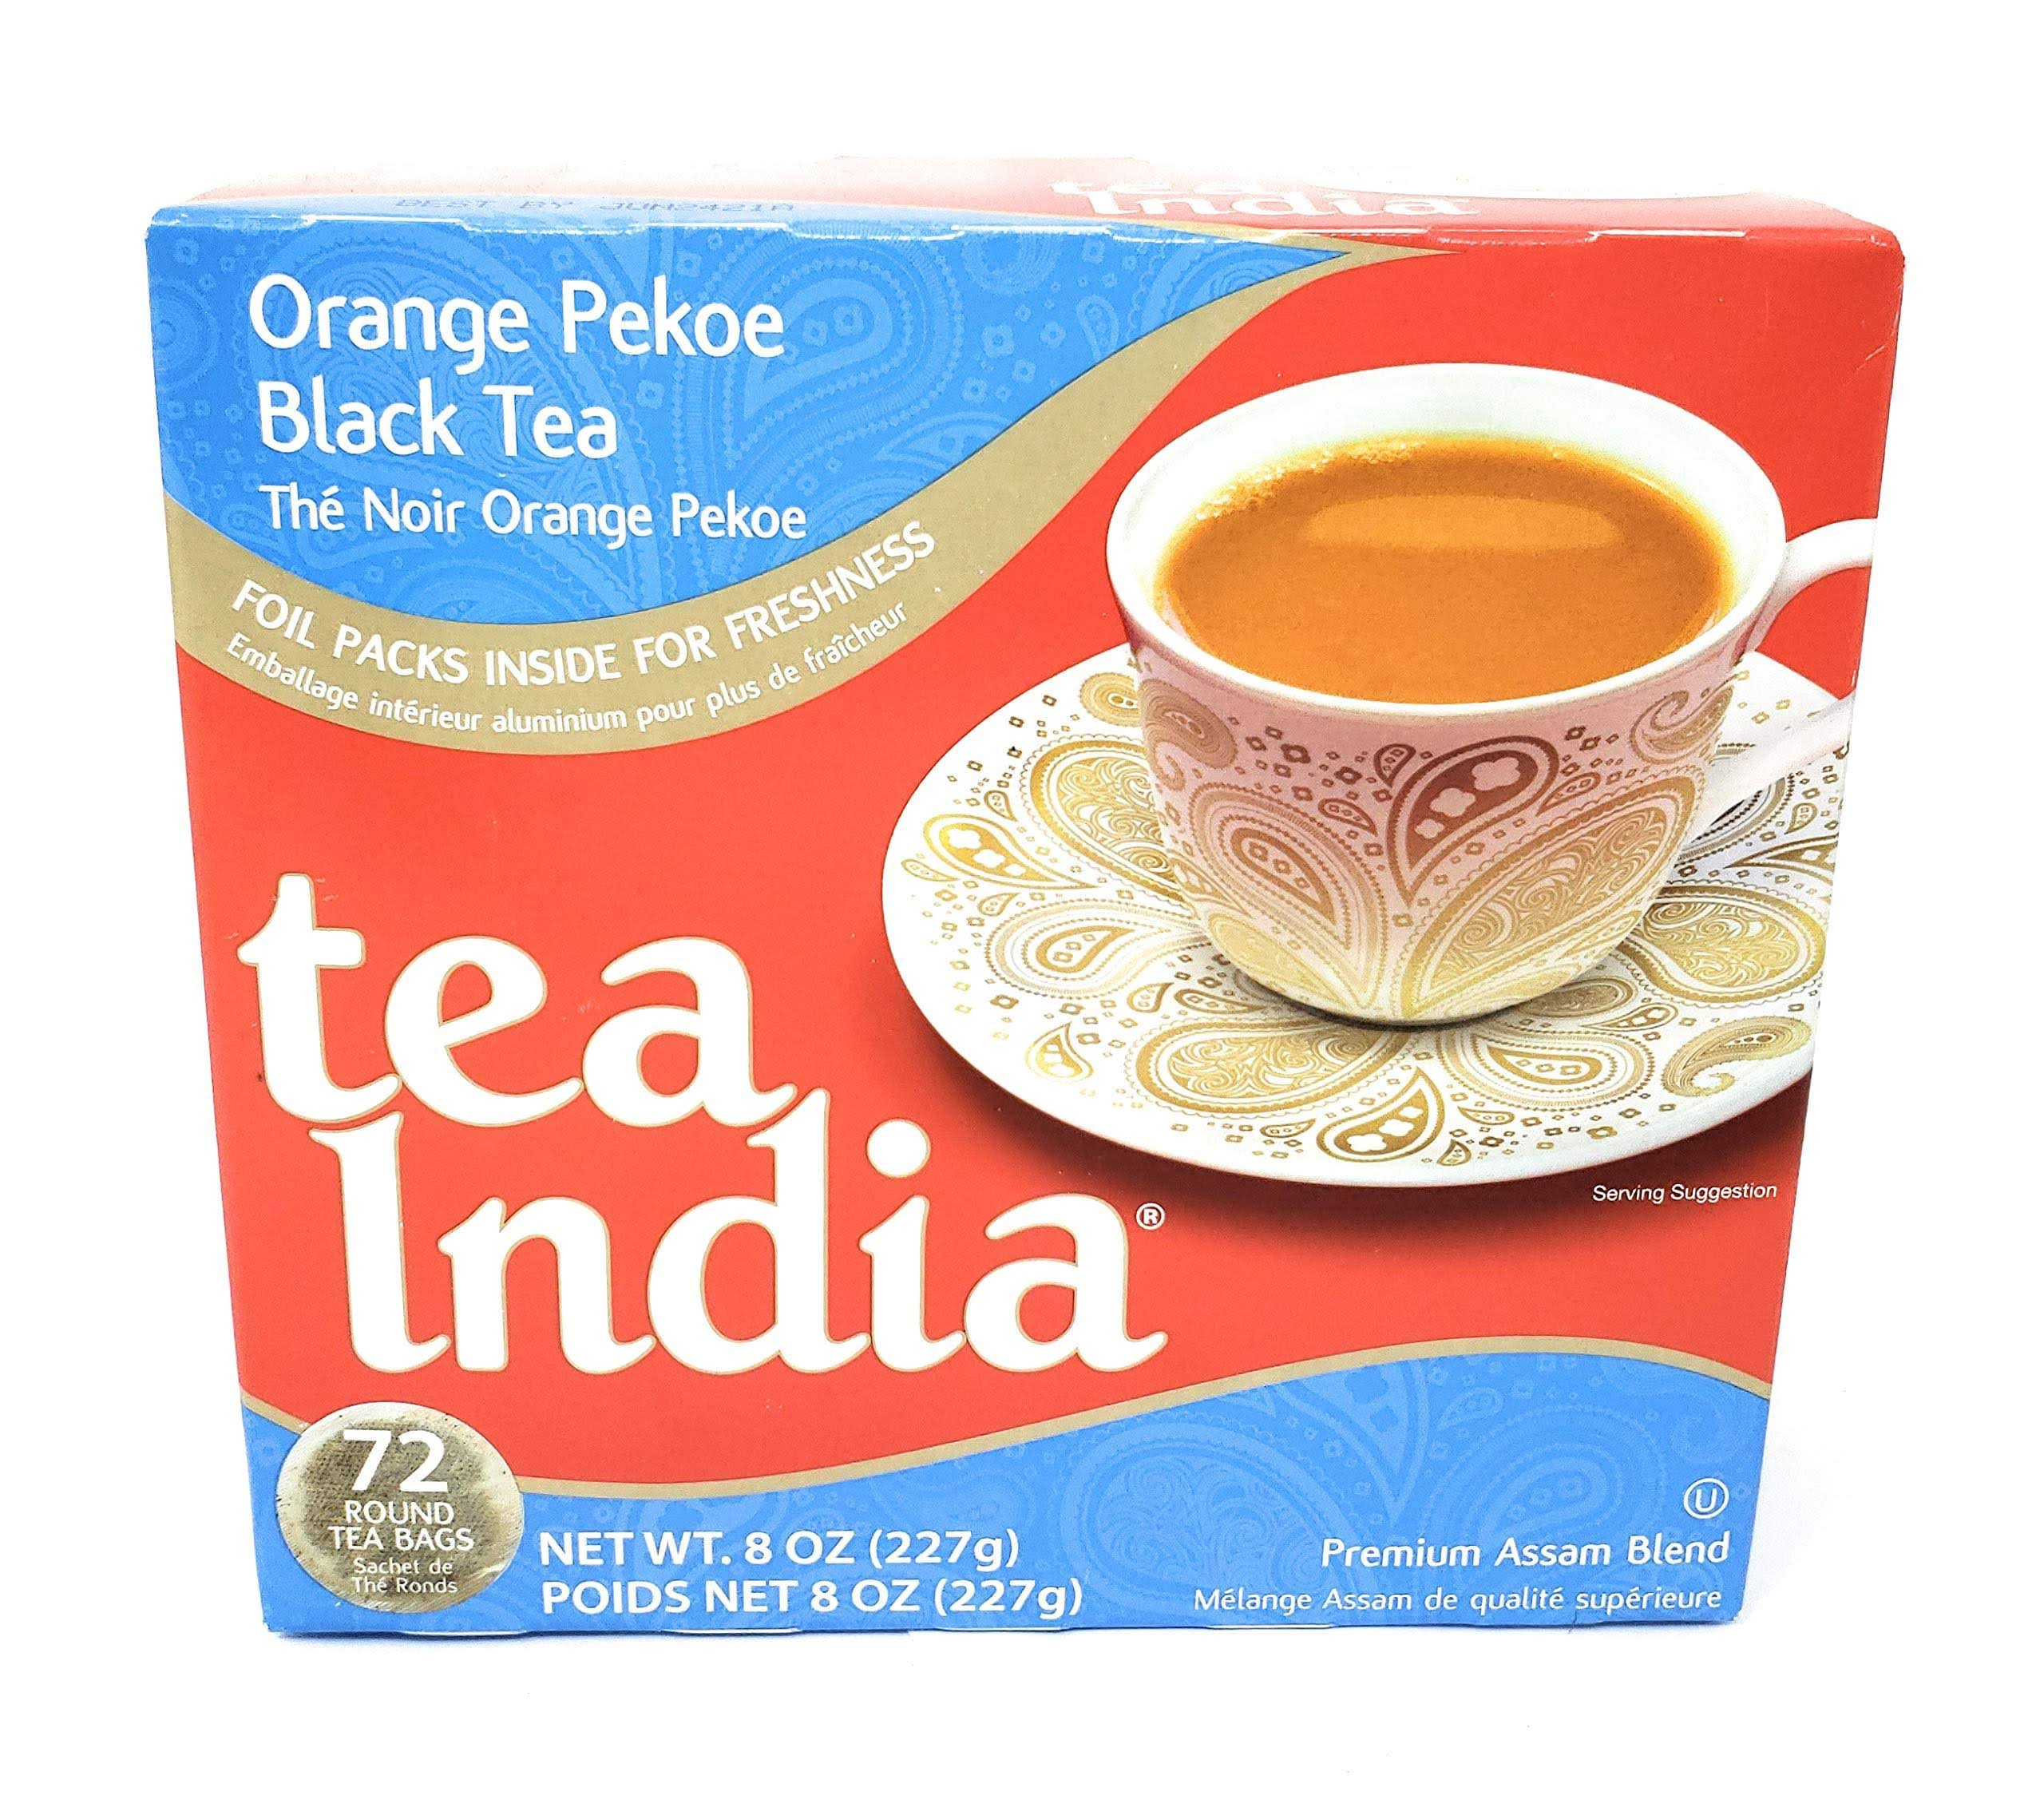 Tea India Orange Pekoe Black Tea Bags